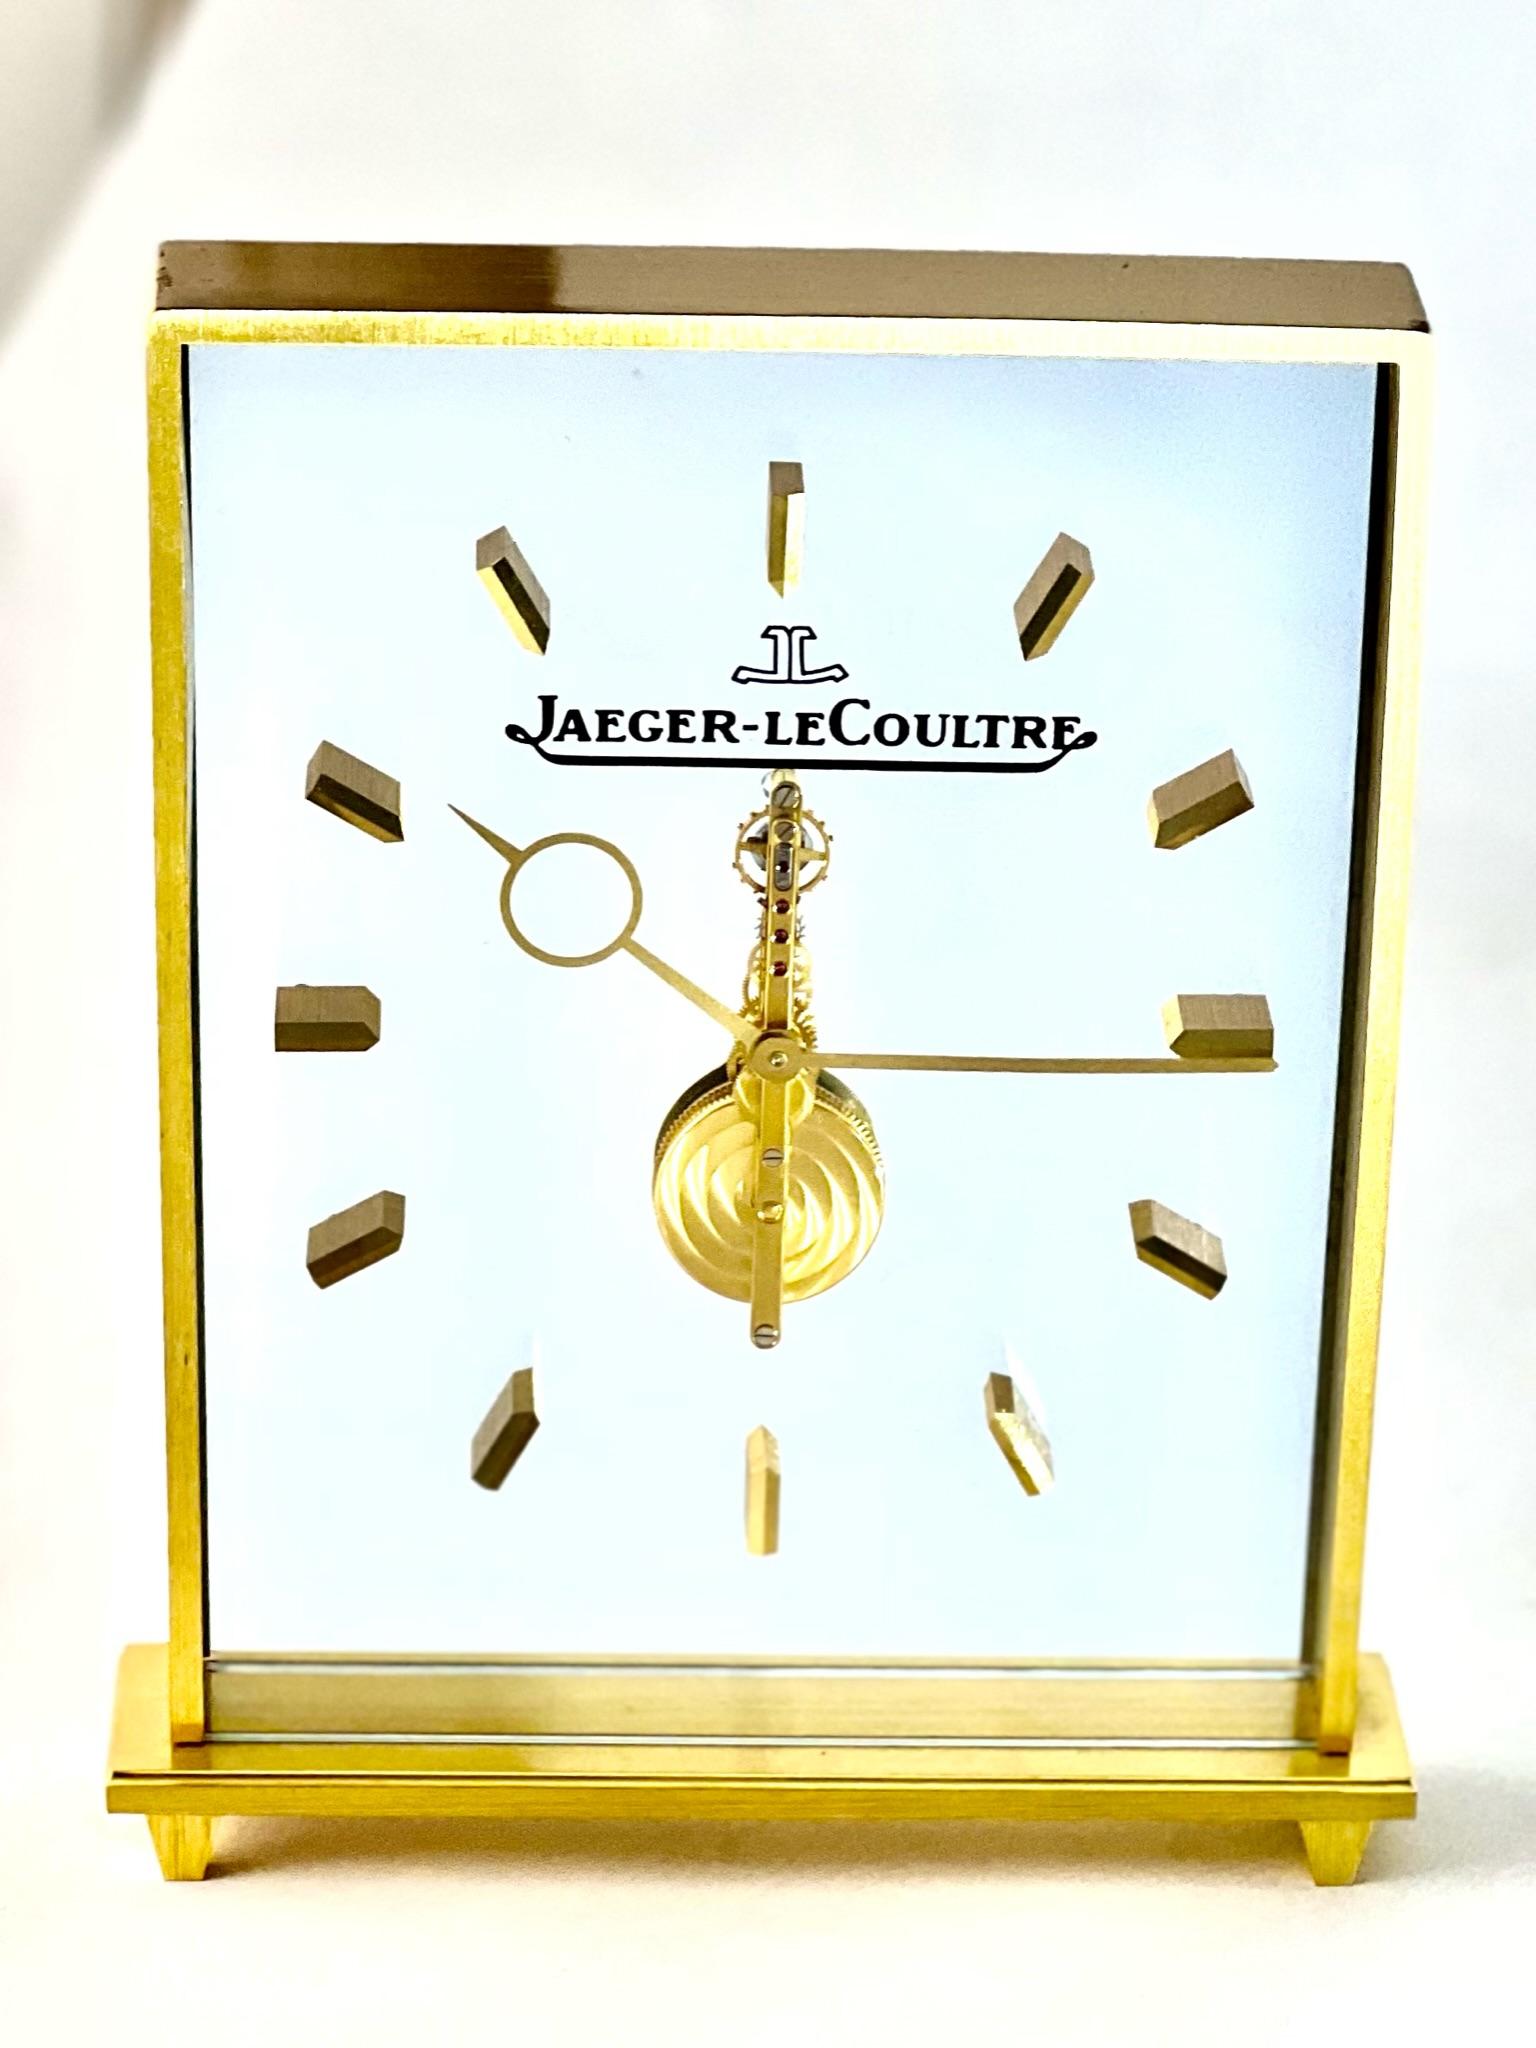 Superbe horloge squelette en ligne de Jaeger LeCoultre, au design épuré et minimaliste, qui sera élégante sur une table, une cheminée ou un bureau. 

L'élégant logo Jaeger LeCoultre est visible et confère à la pendule un style ascétique.